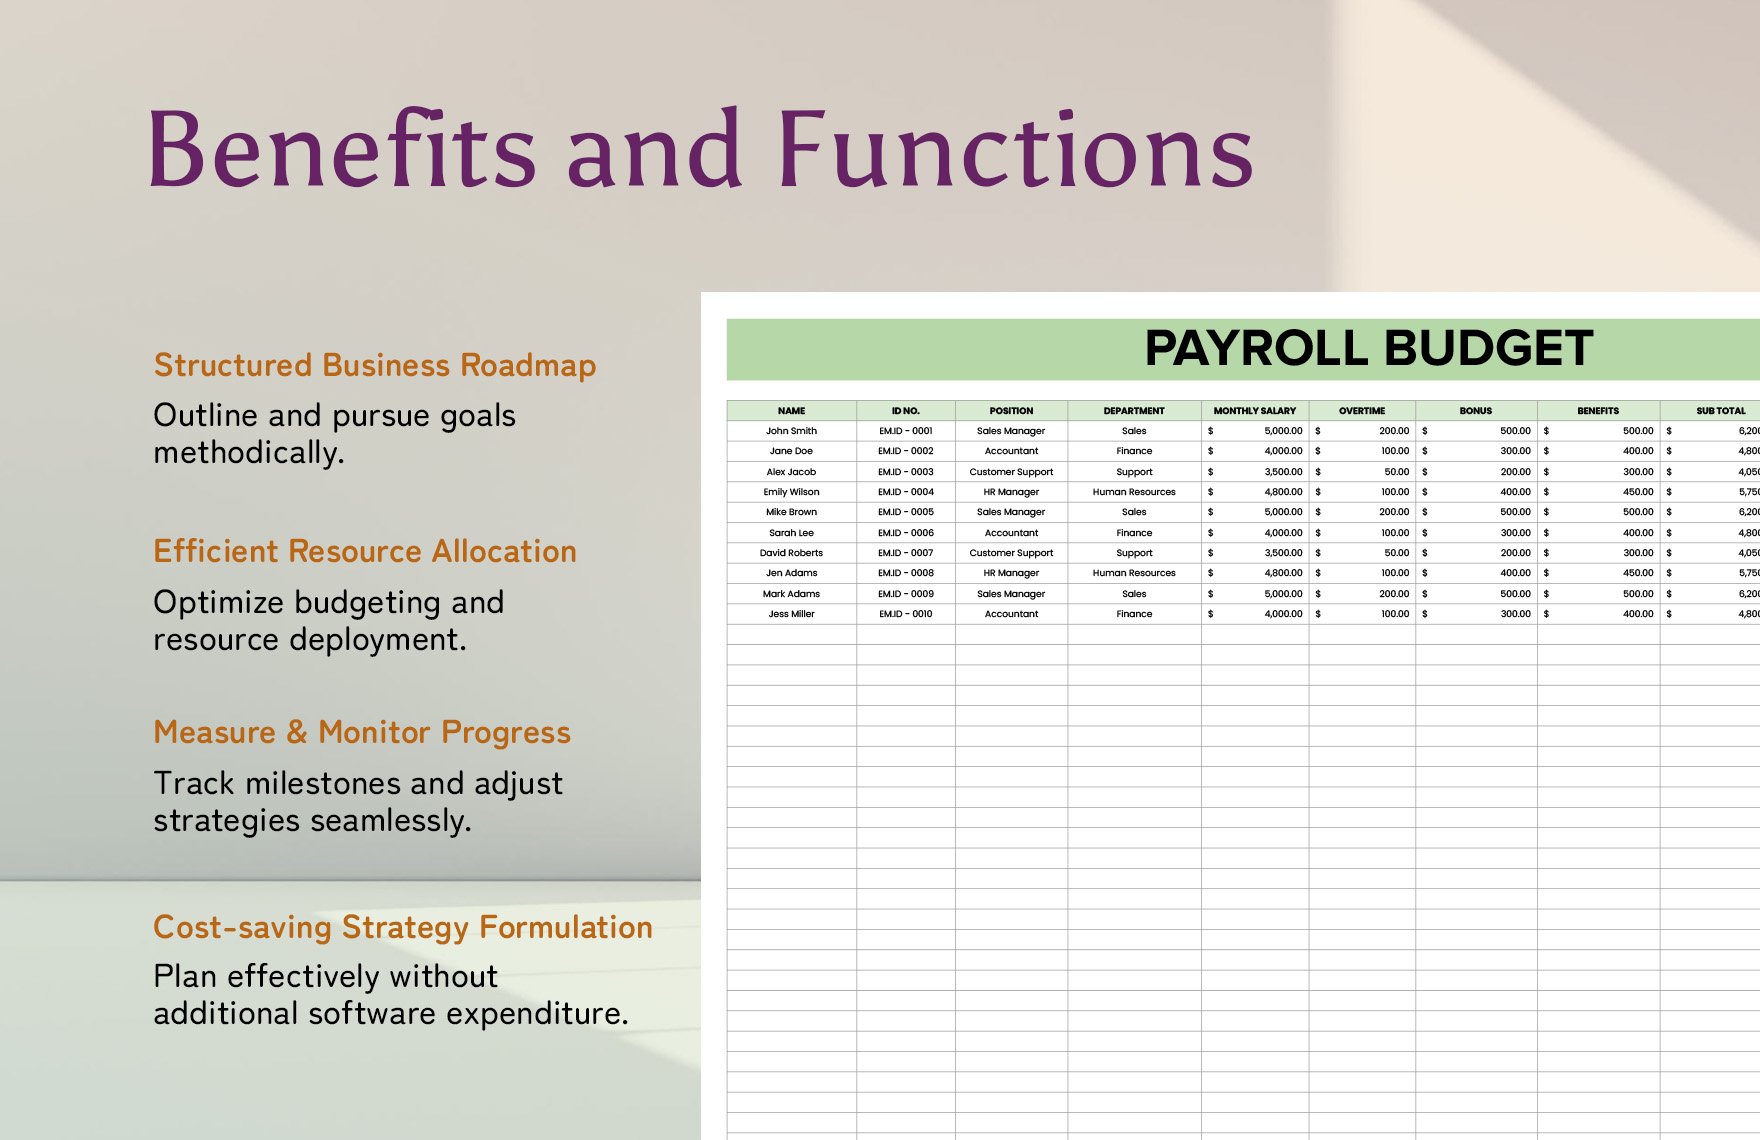 Payroll Budget Template